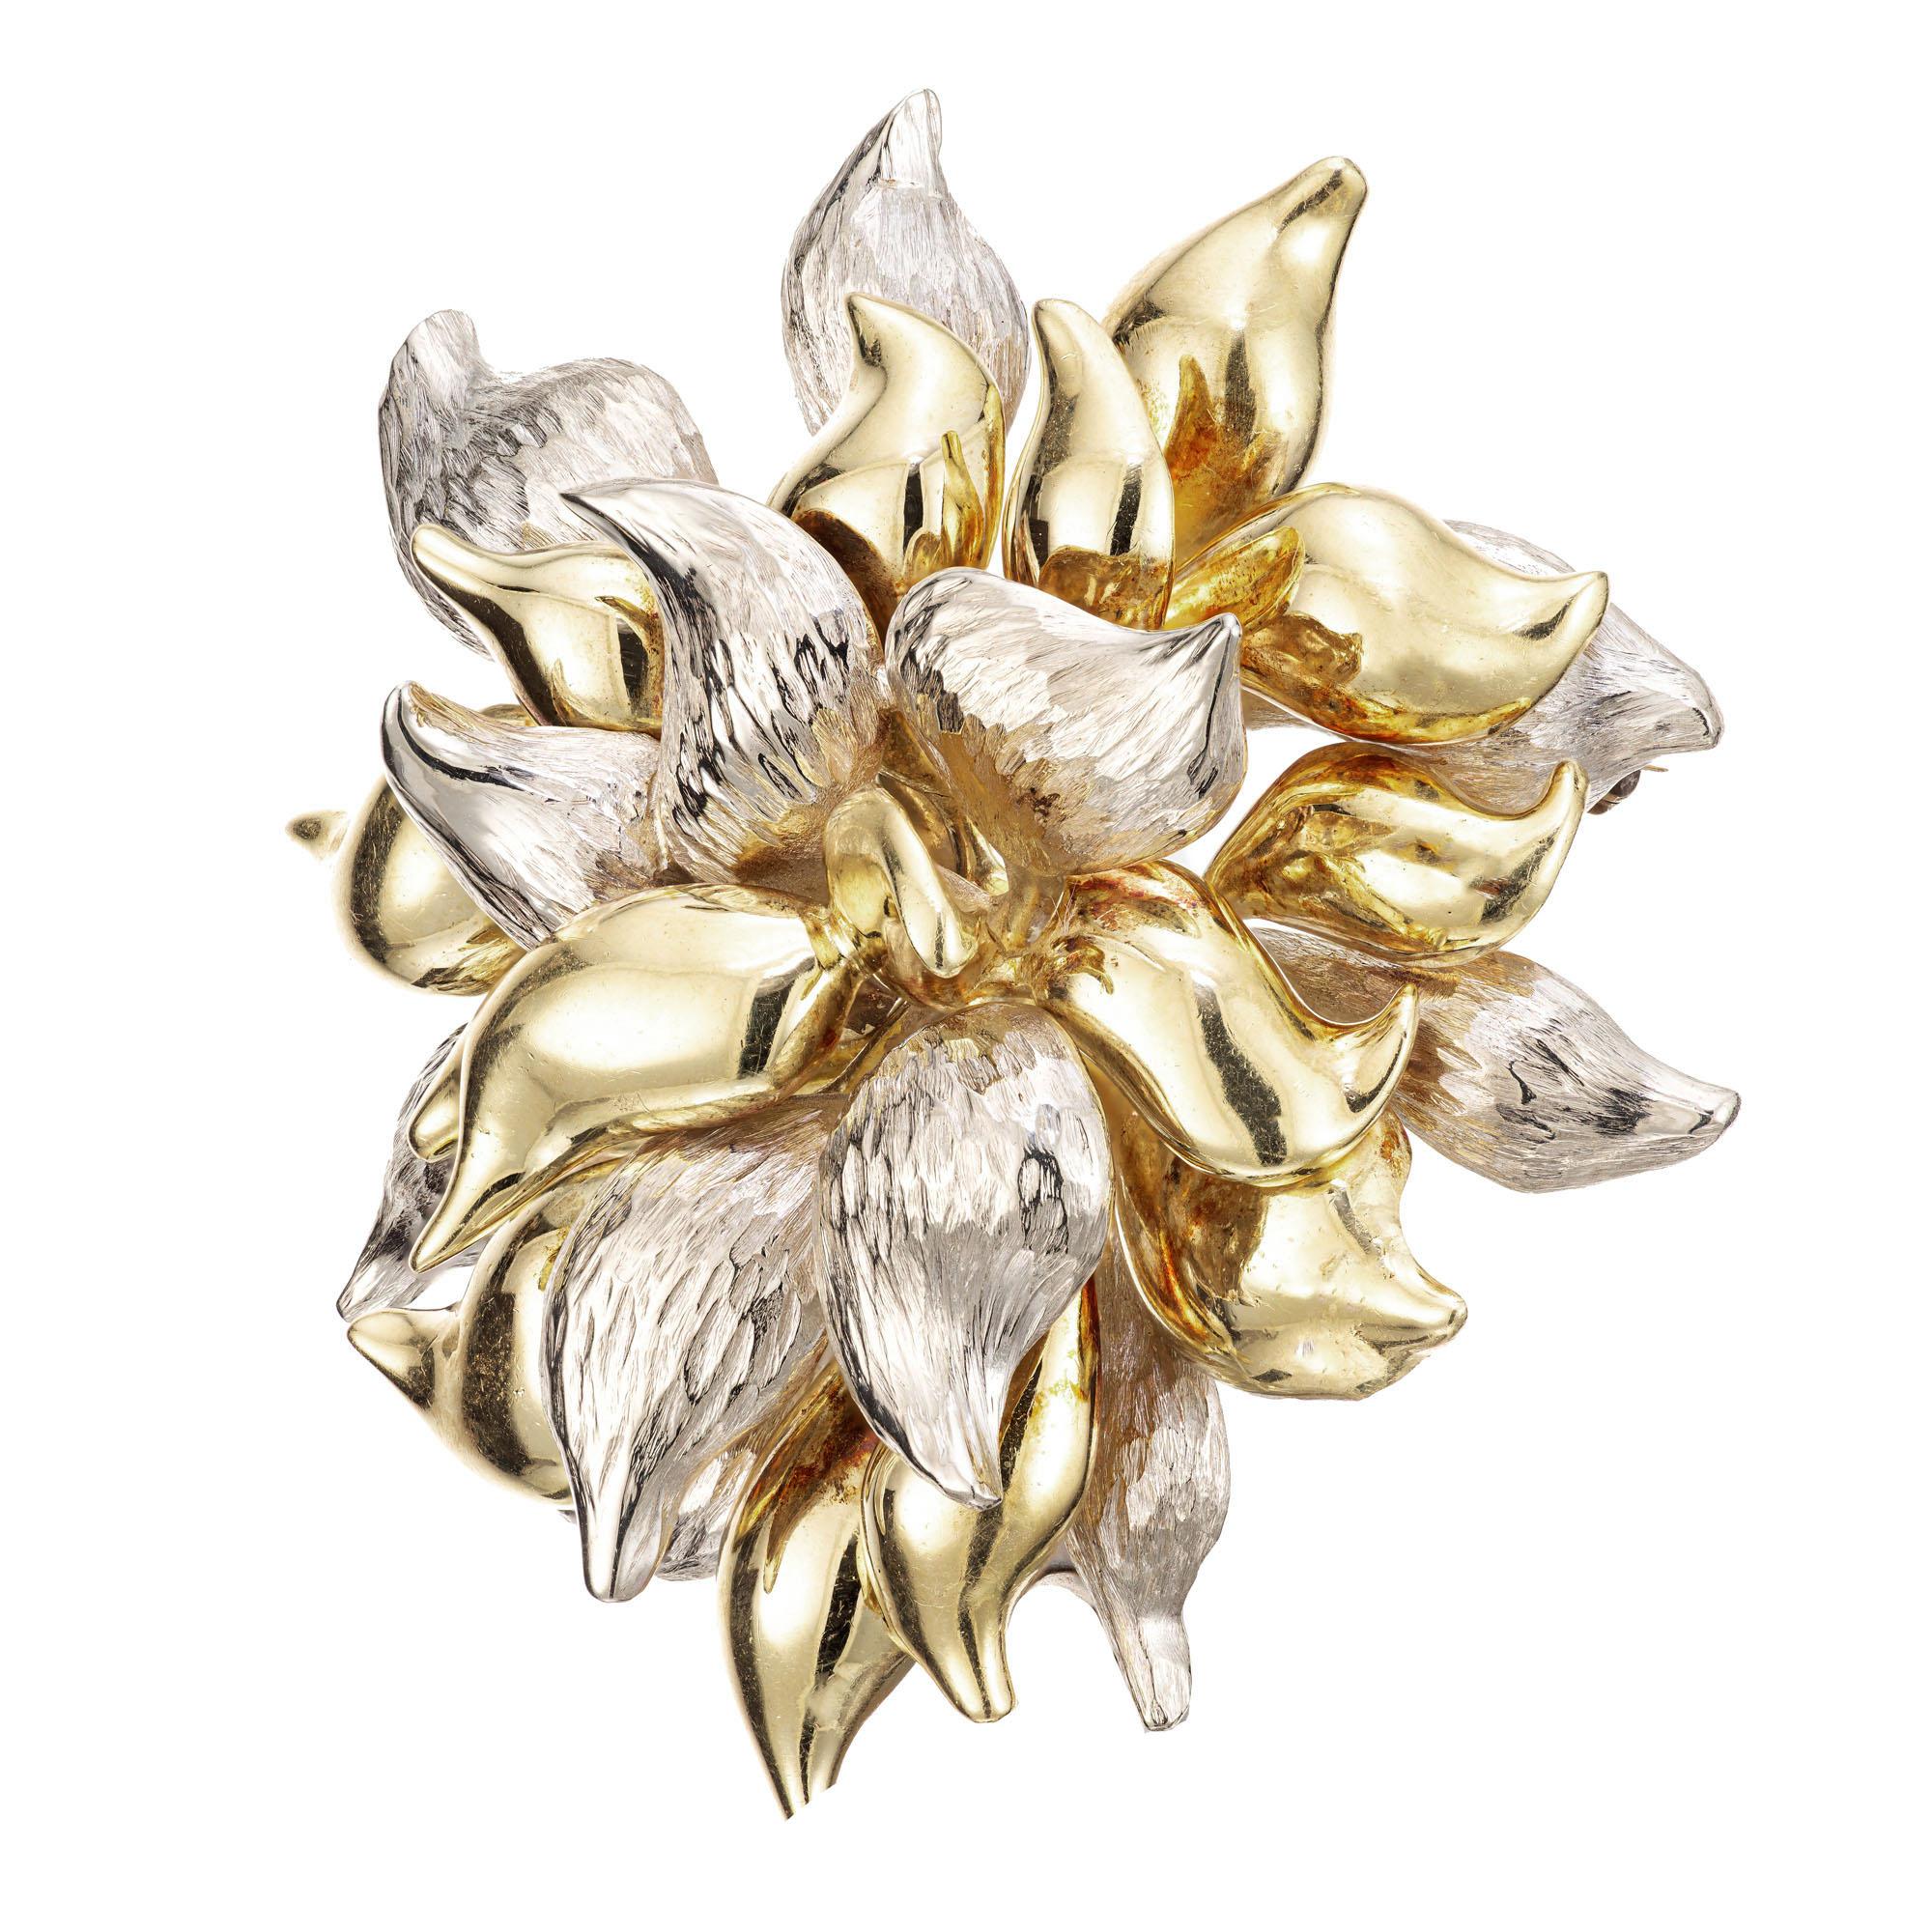 1950's Tiffany & Co. 18k Gelb- und Weißgold texturiert, 3D Blume Brosche. Unterzeichnet Tiffany Italy. 

Durchmesser: 51,85 mm oder 2,04 Zoll
Tiefe: 18,42 mm
40.7 Gramm
Geprüft: 18k
Gestempelt: K18 Italien
Wahrzeichen: Tiffany